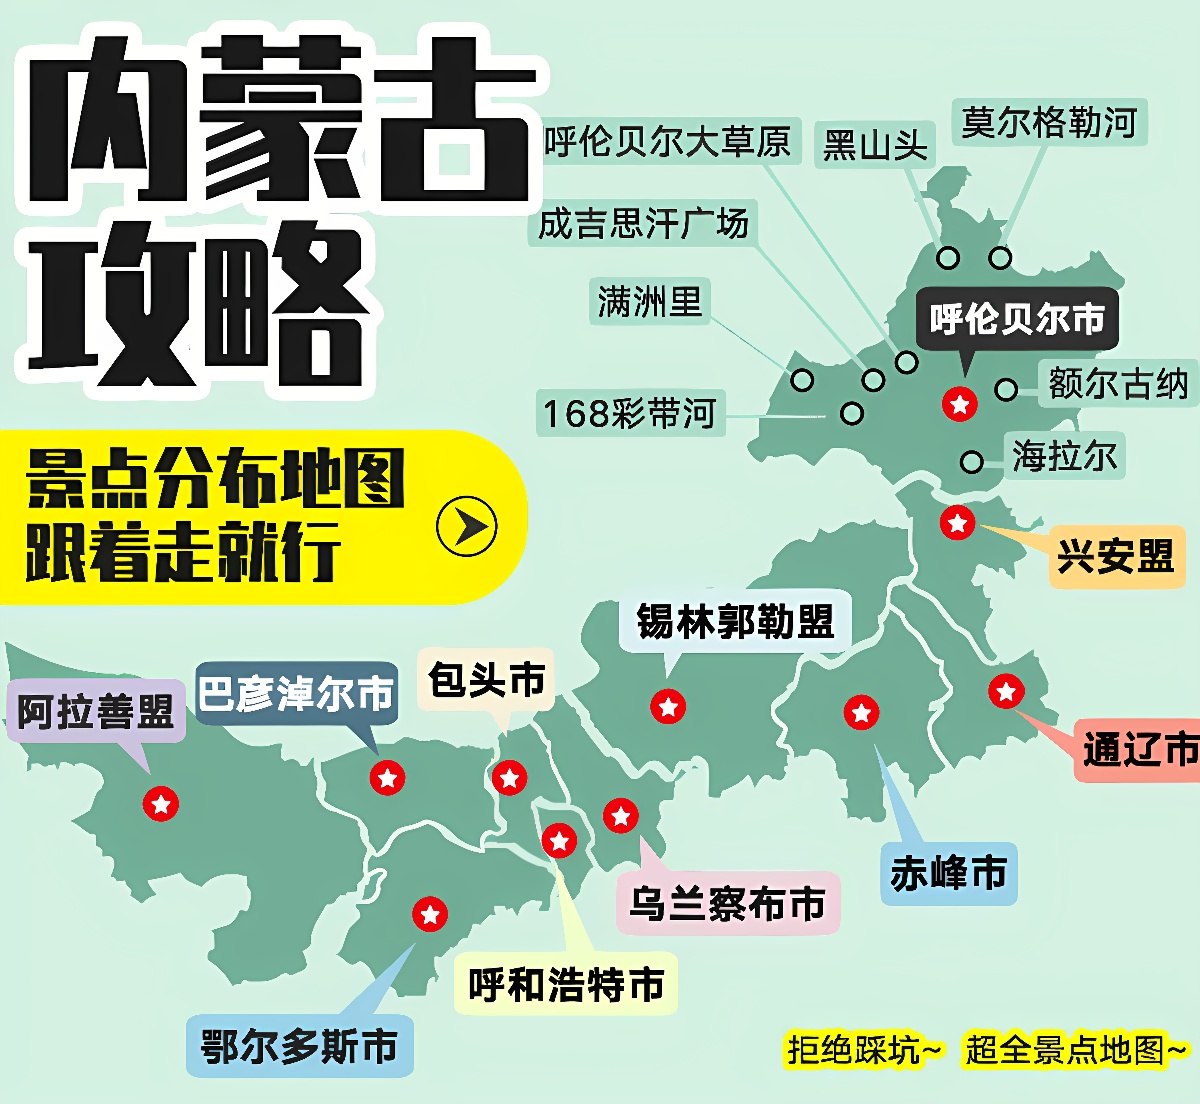 这是一张含有多个标记的中国地图，展示了不同城市的气象信息，有文字说明和箭头指示，颜色使用鲜明，具有信息传递功能。